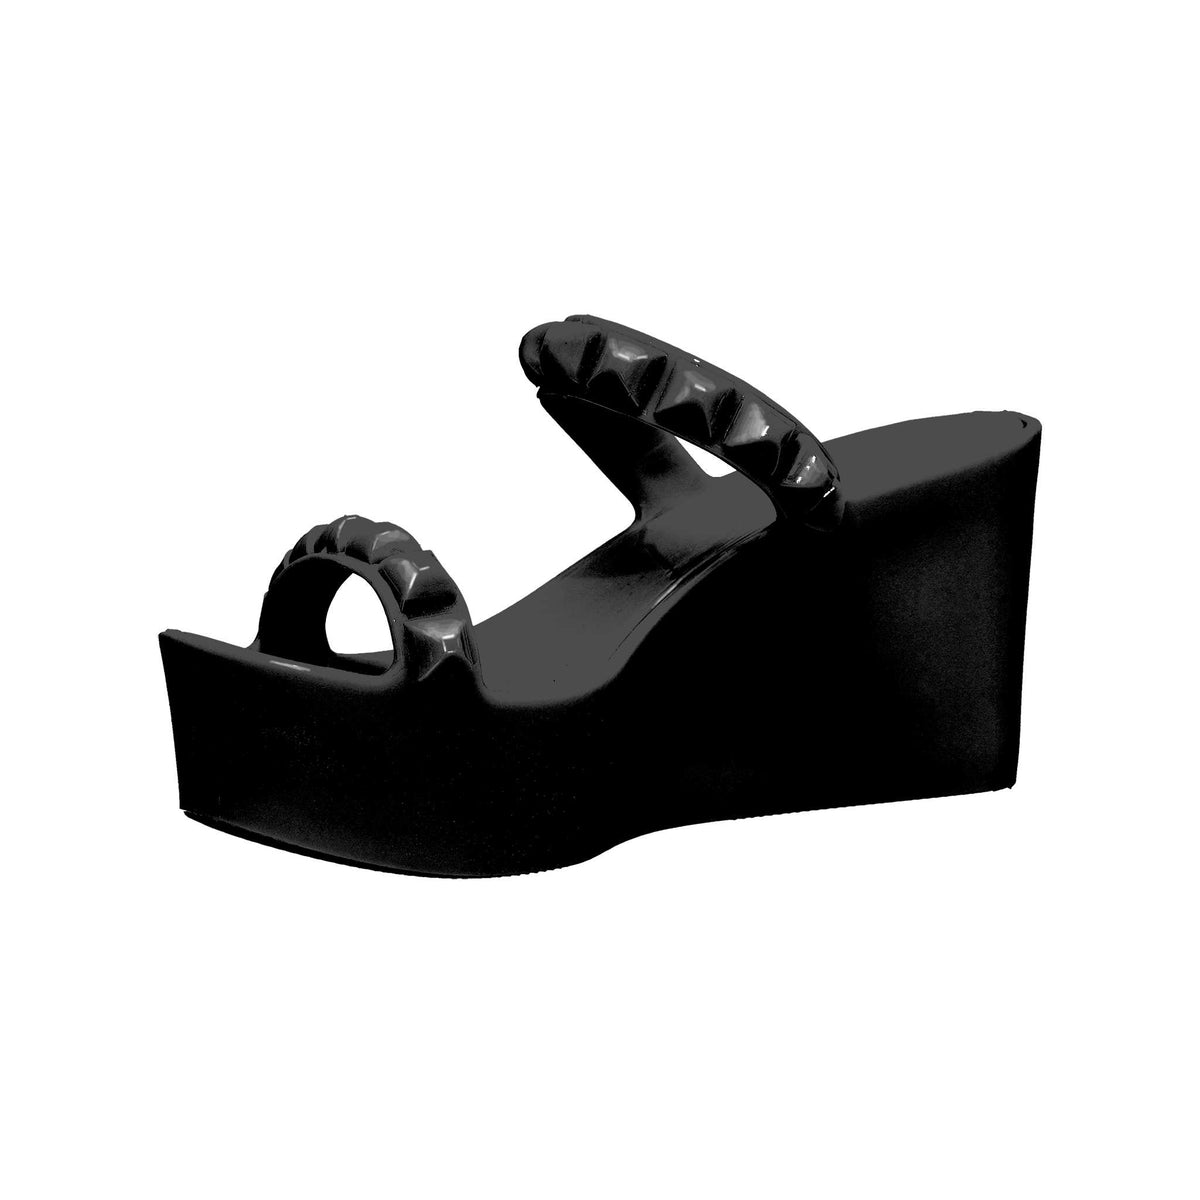 Black heels, Carmen Sol black platform heels party look